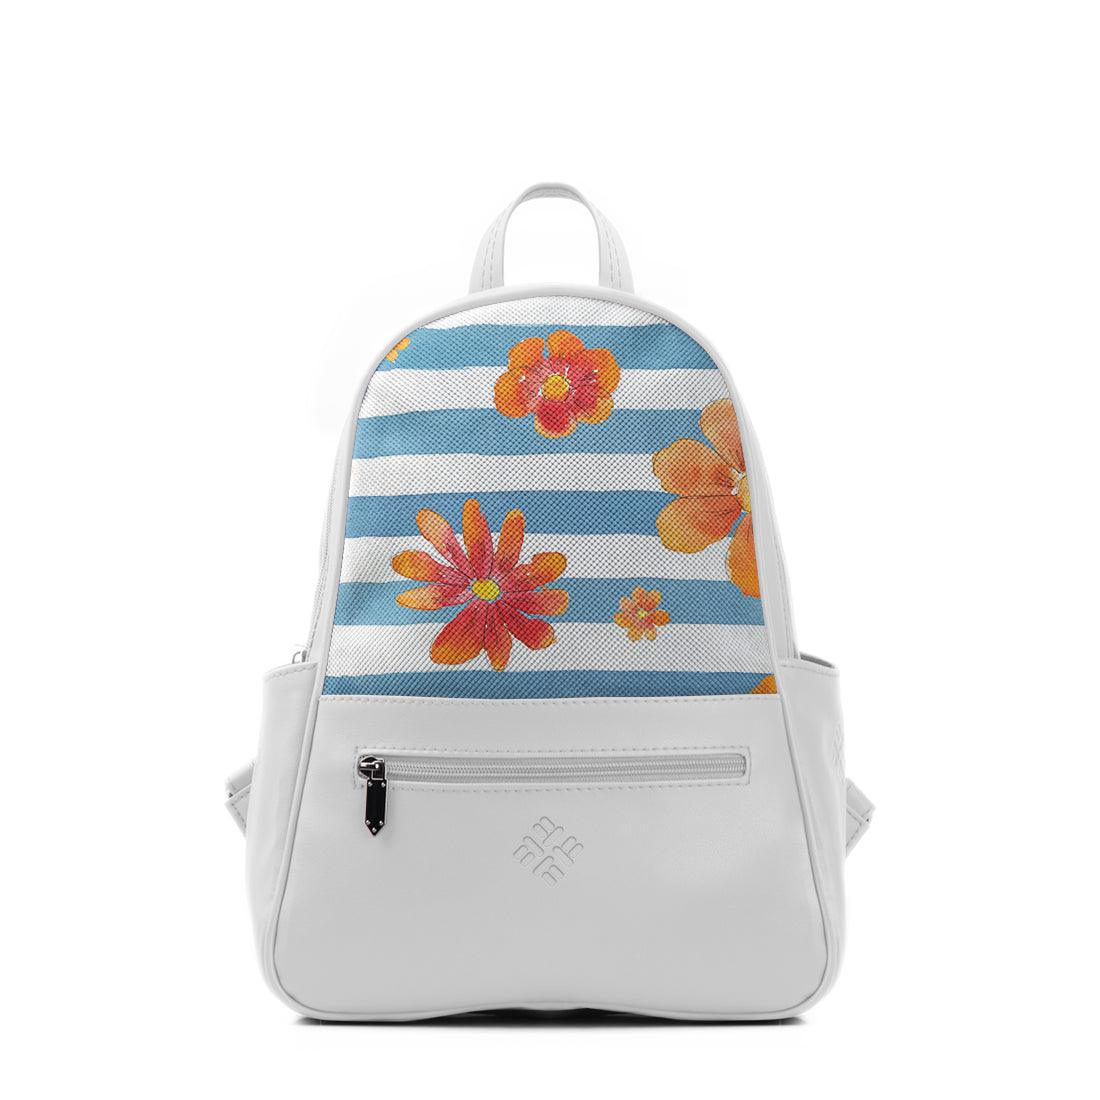 White Vivid Backpack Blue Floral